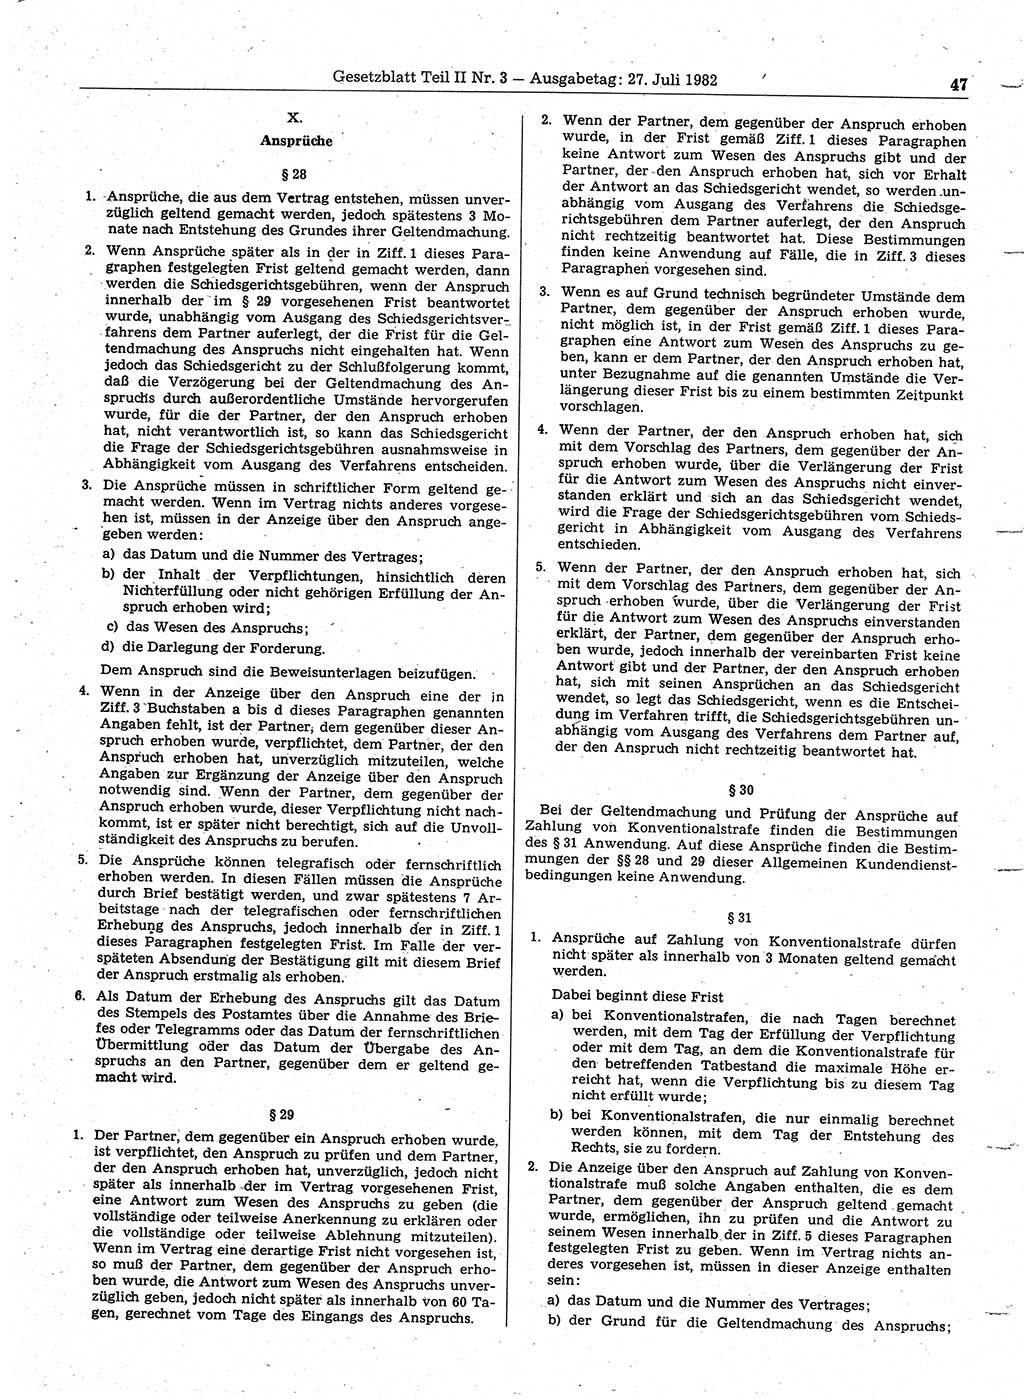 Gesetzblatt (GBl.) der Deutschen Demokratischen Republik (DDR) Teil ⅠⅠ 1982, Seite 47 (GBl. DDR ⅠⅠ 1982, S. 47)